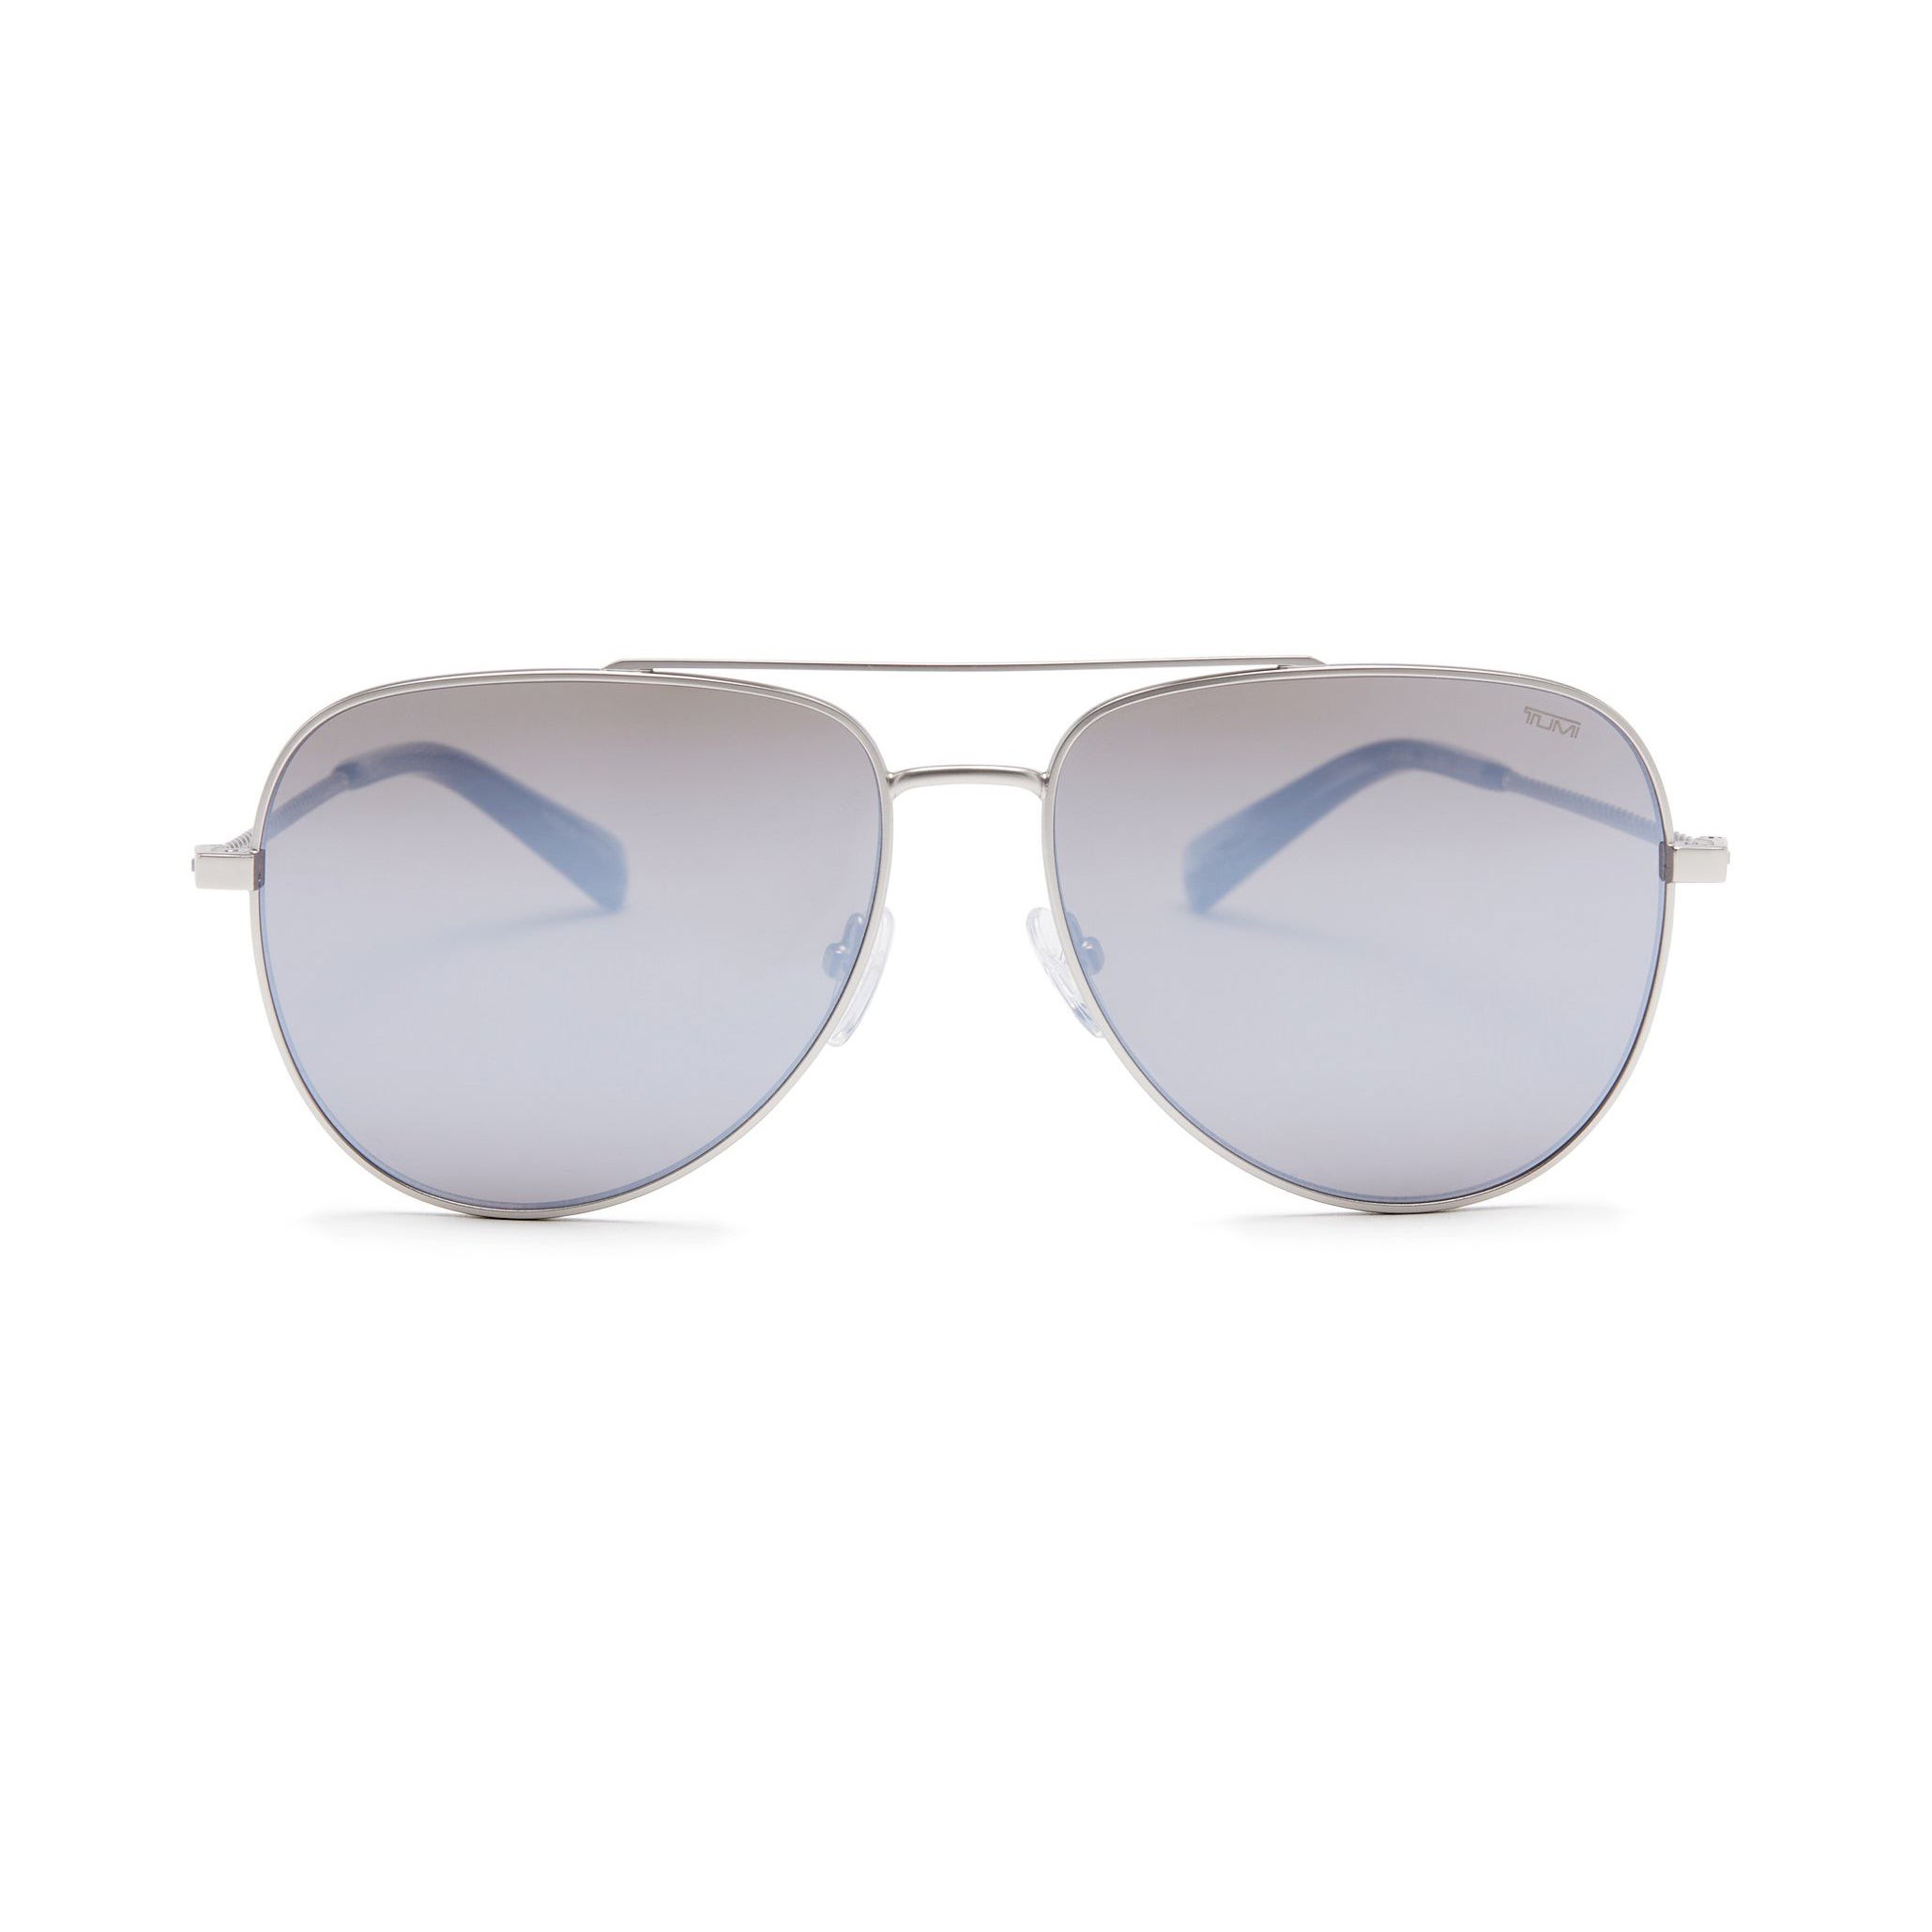 008 Aviator Sunglasses 59mm - Silver/Silver Mirror